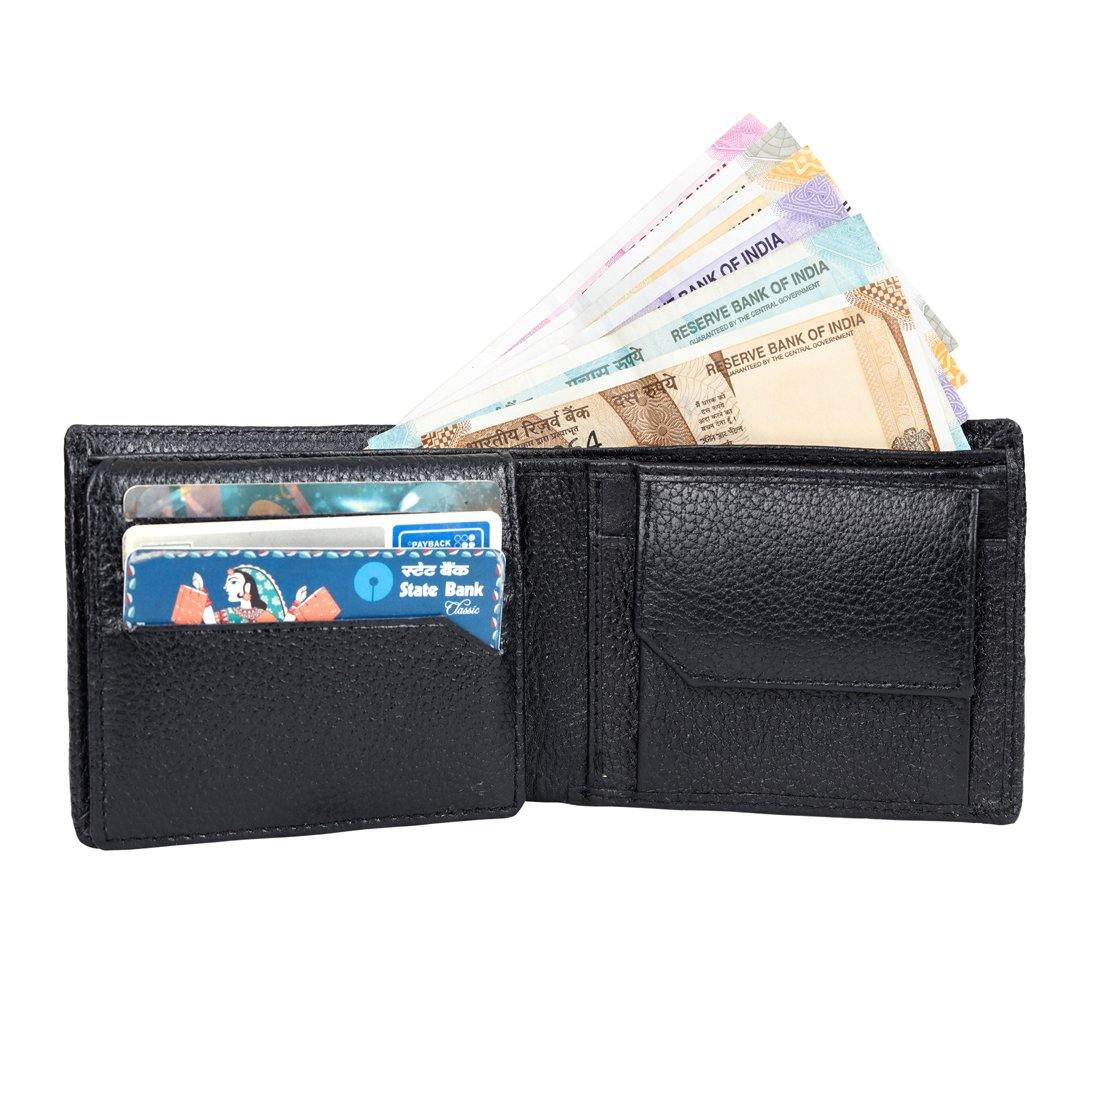 Luxurious Leather Wallet for Men - Leatherworldonline.net